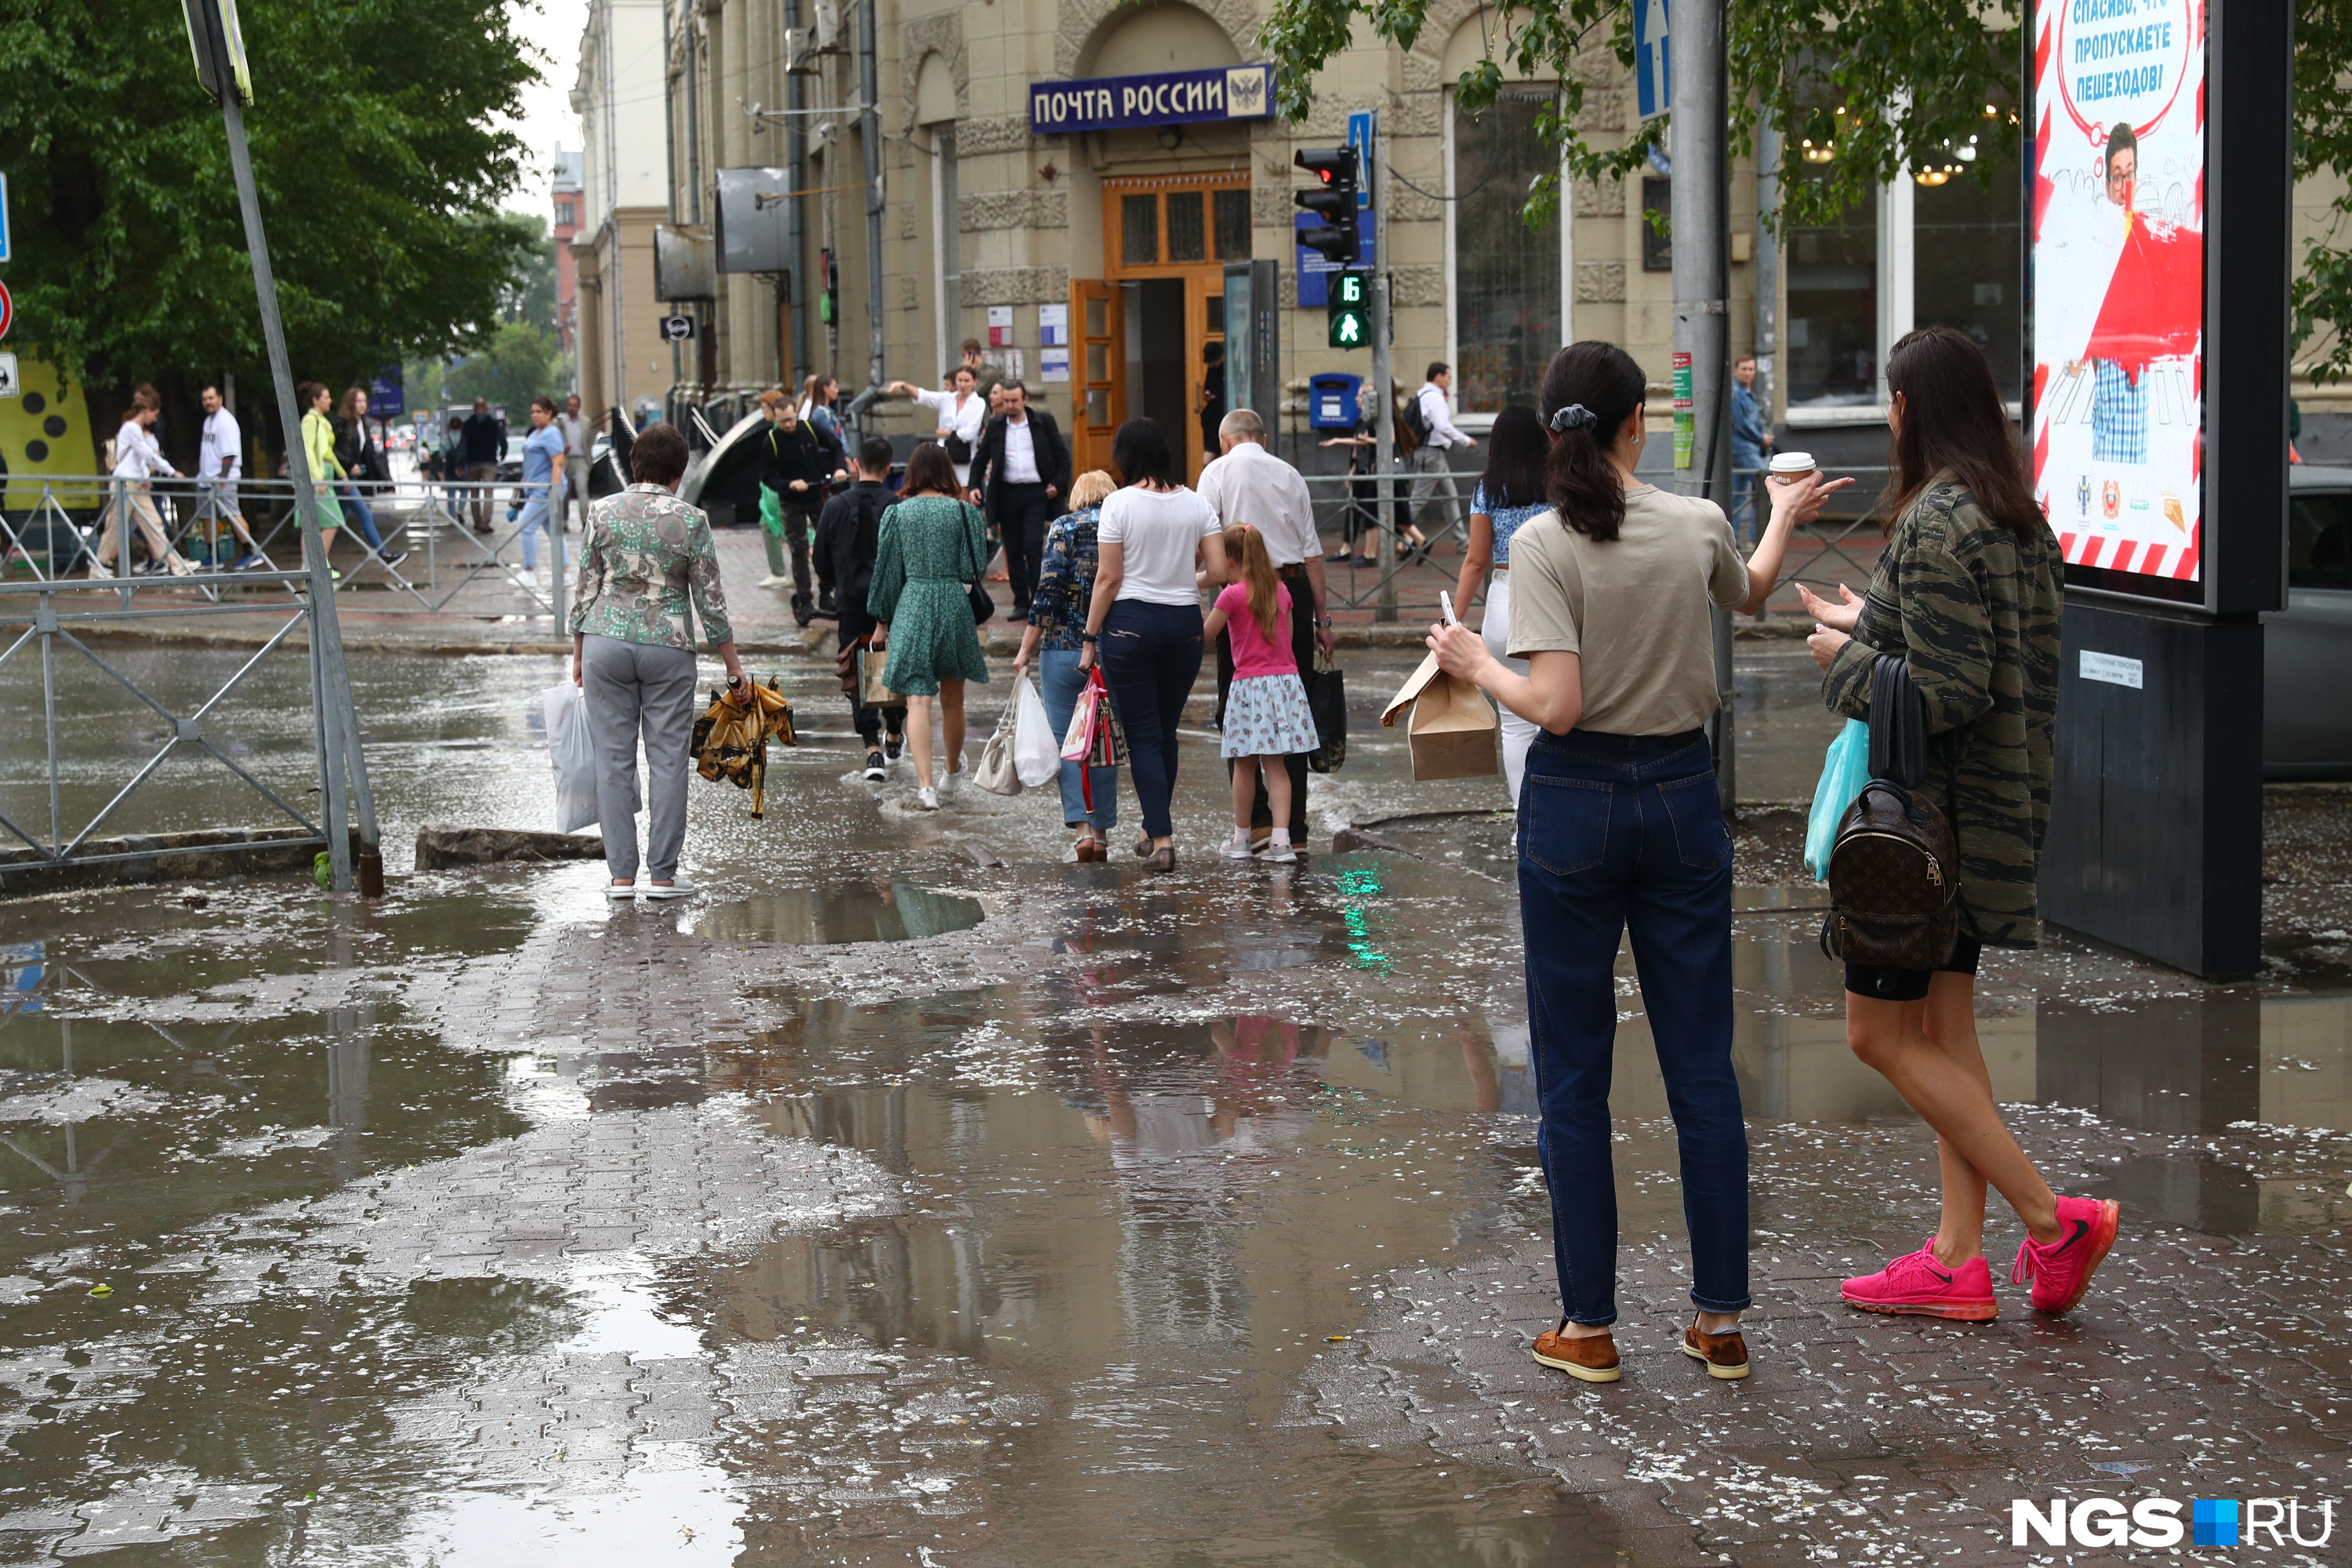 Вечером после 12. Дождь на улице. Люди в городе. Ливни. Дождь в городе.